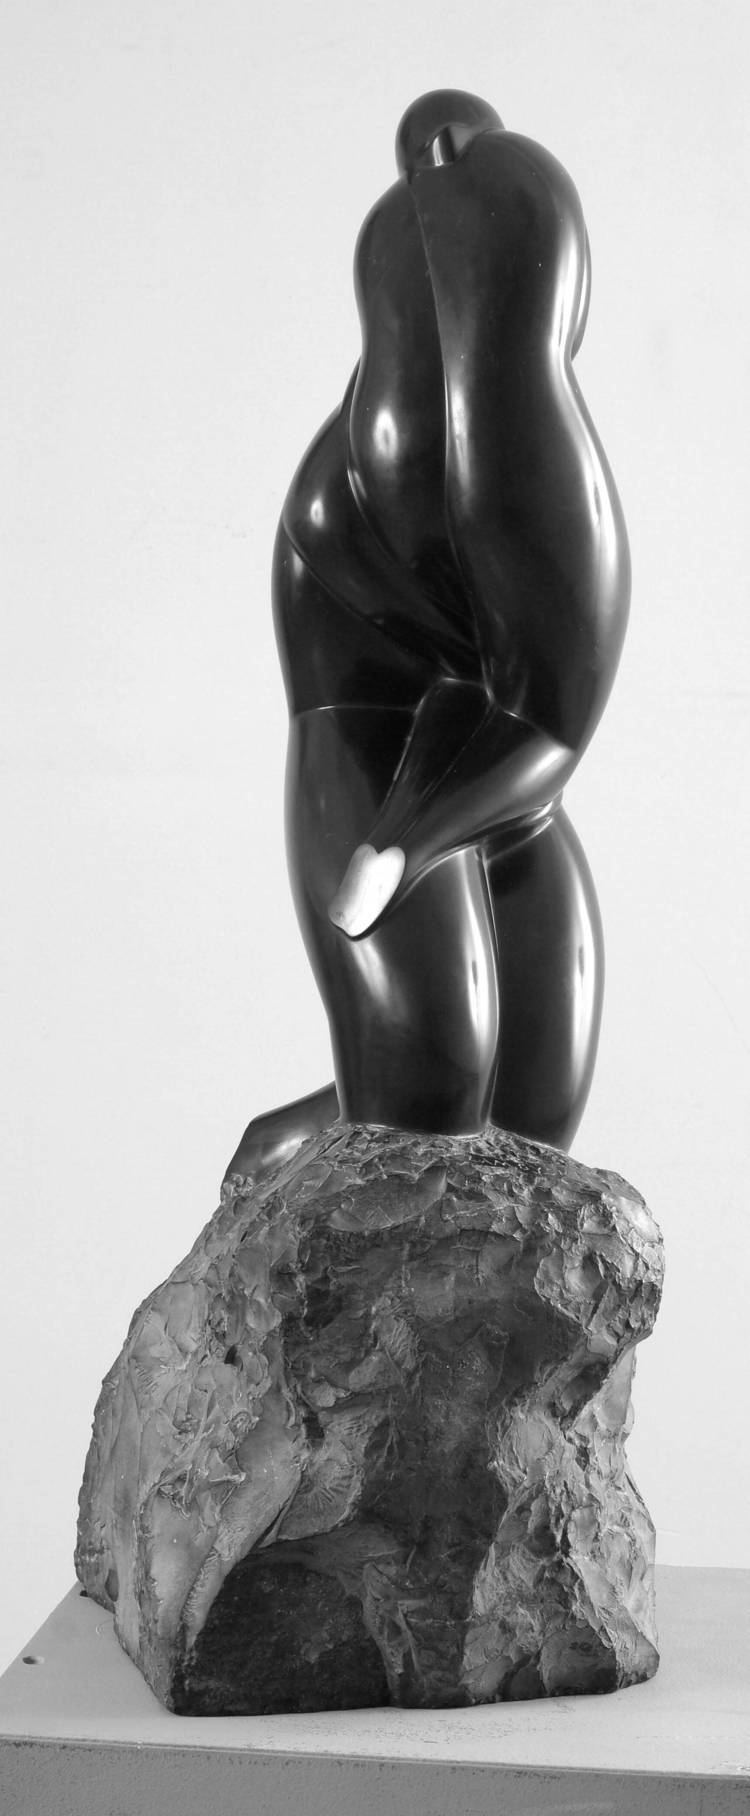 August Zamoyski August Zamoyski Bronze Sculpture For Sale at 1stdibs